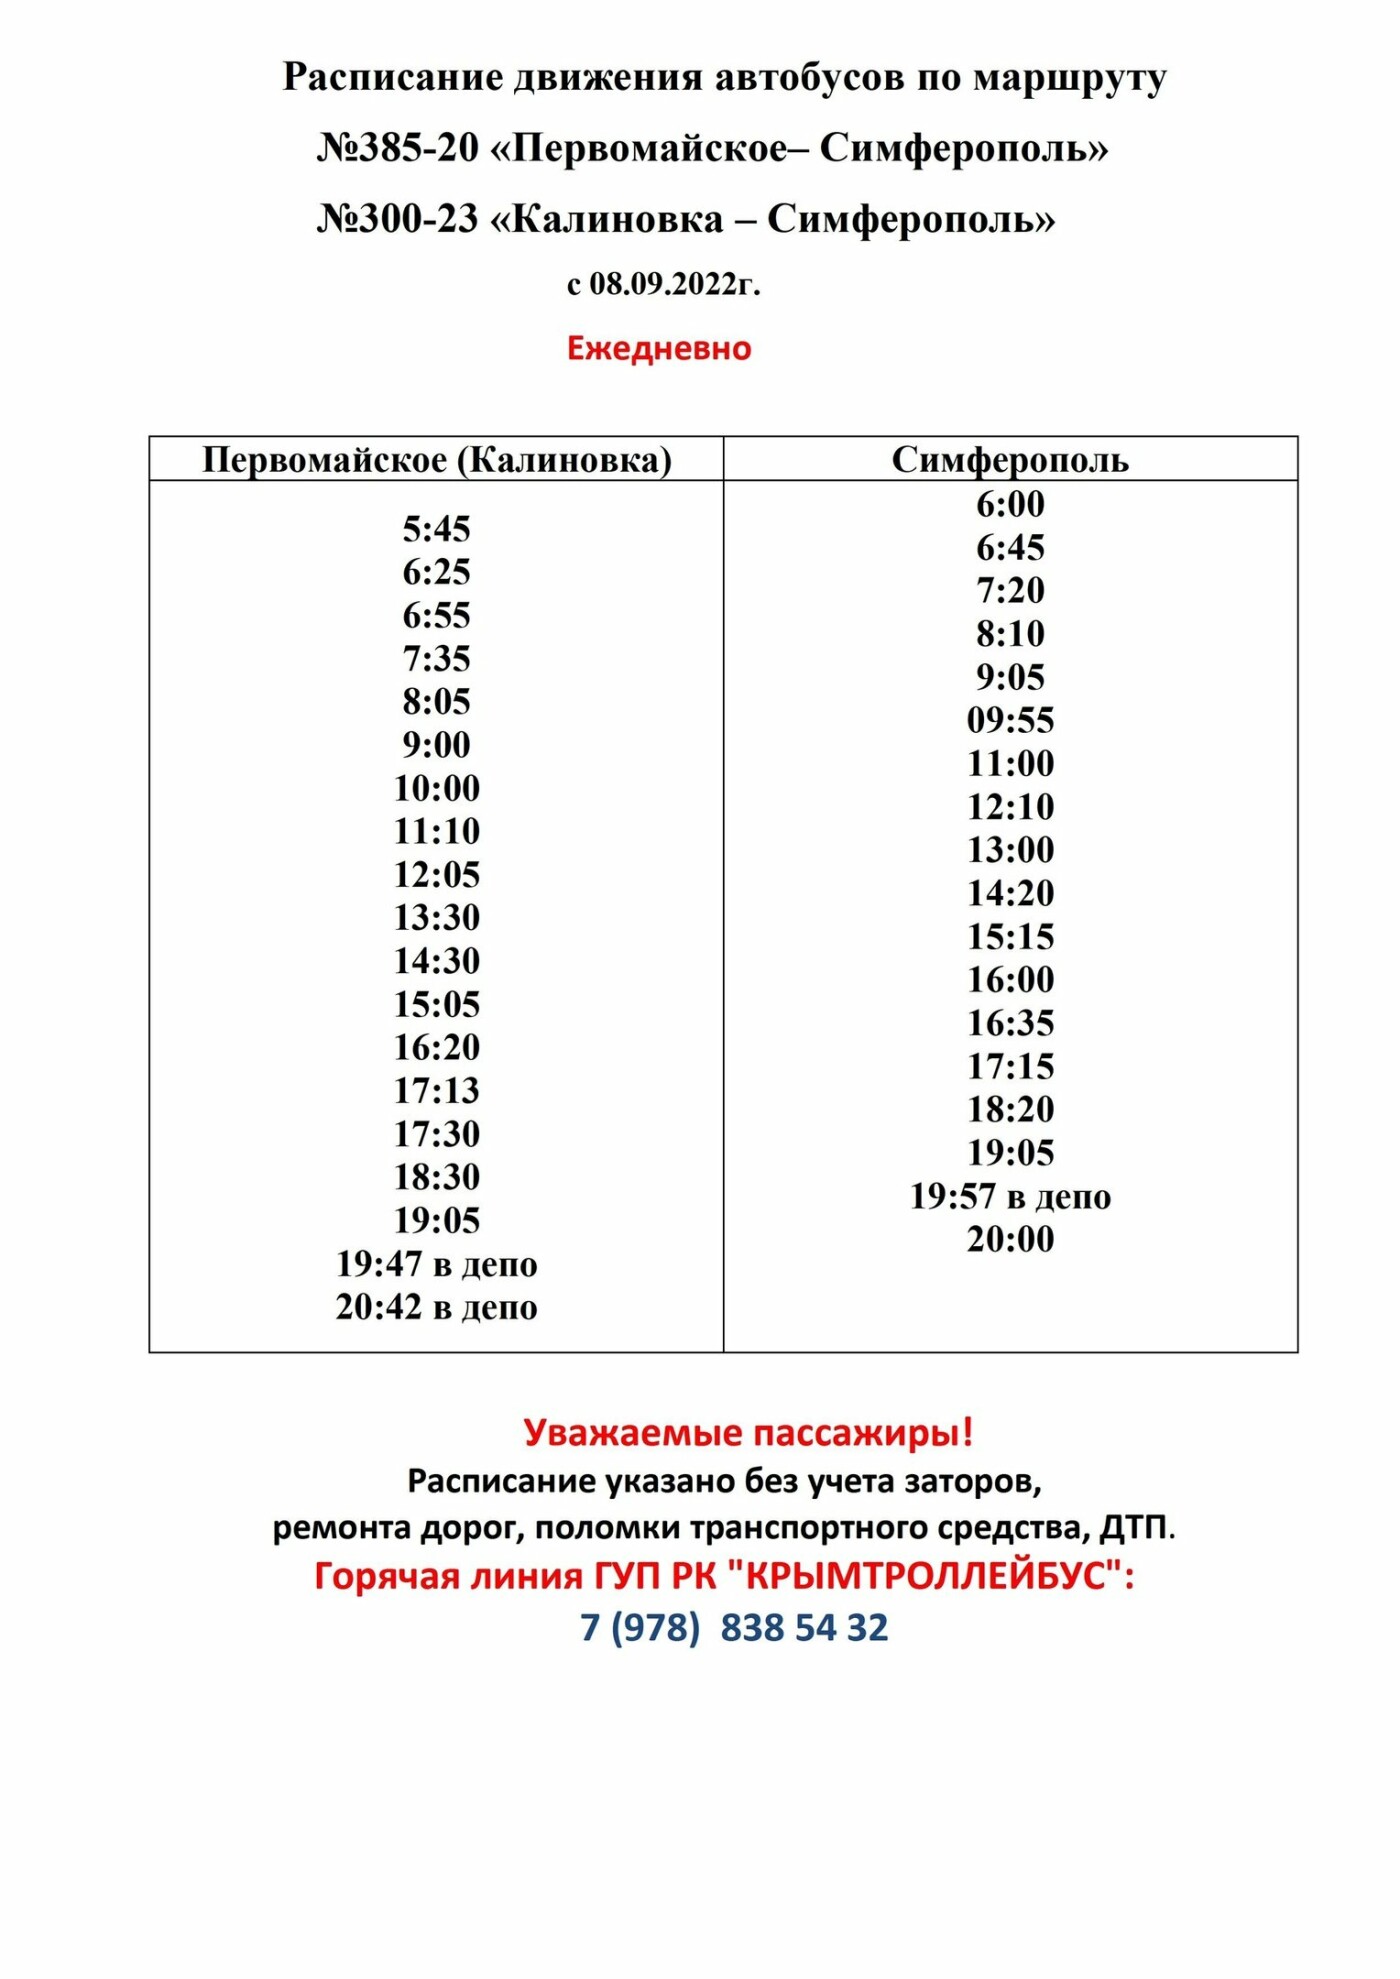 Челябинск — Первомайское: билеты на автобус от р., цены и расписание